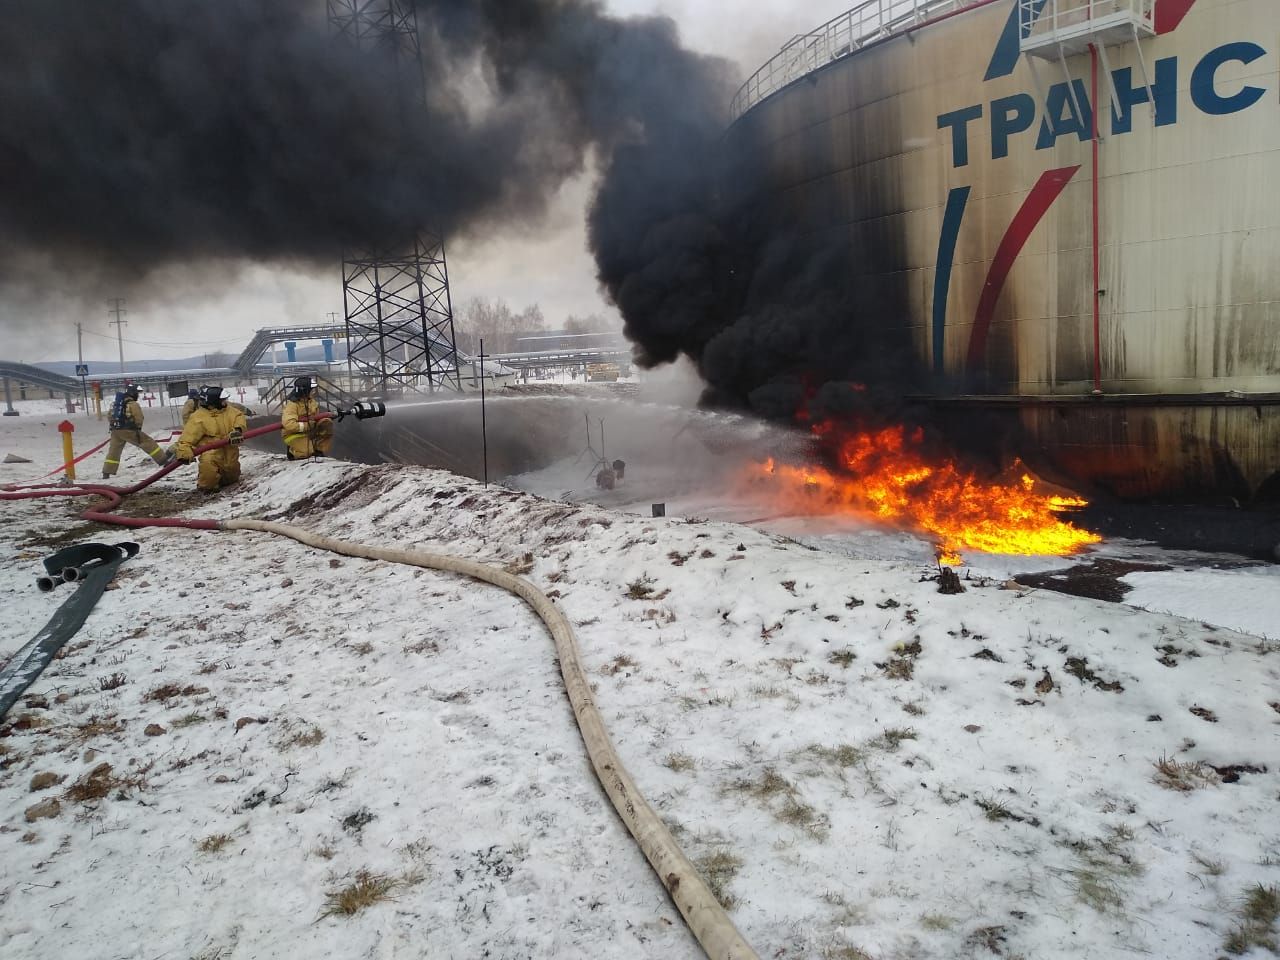 МЧС опубликовало видео тушения пожара на нефтеперекачивающей станции в Альметьевском районе